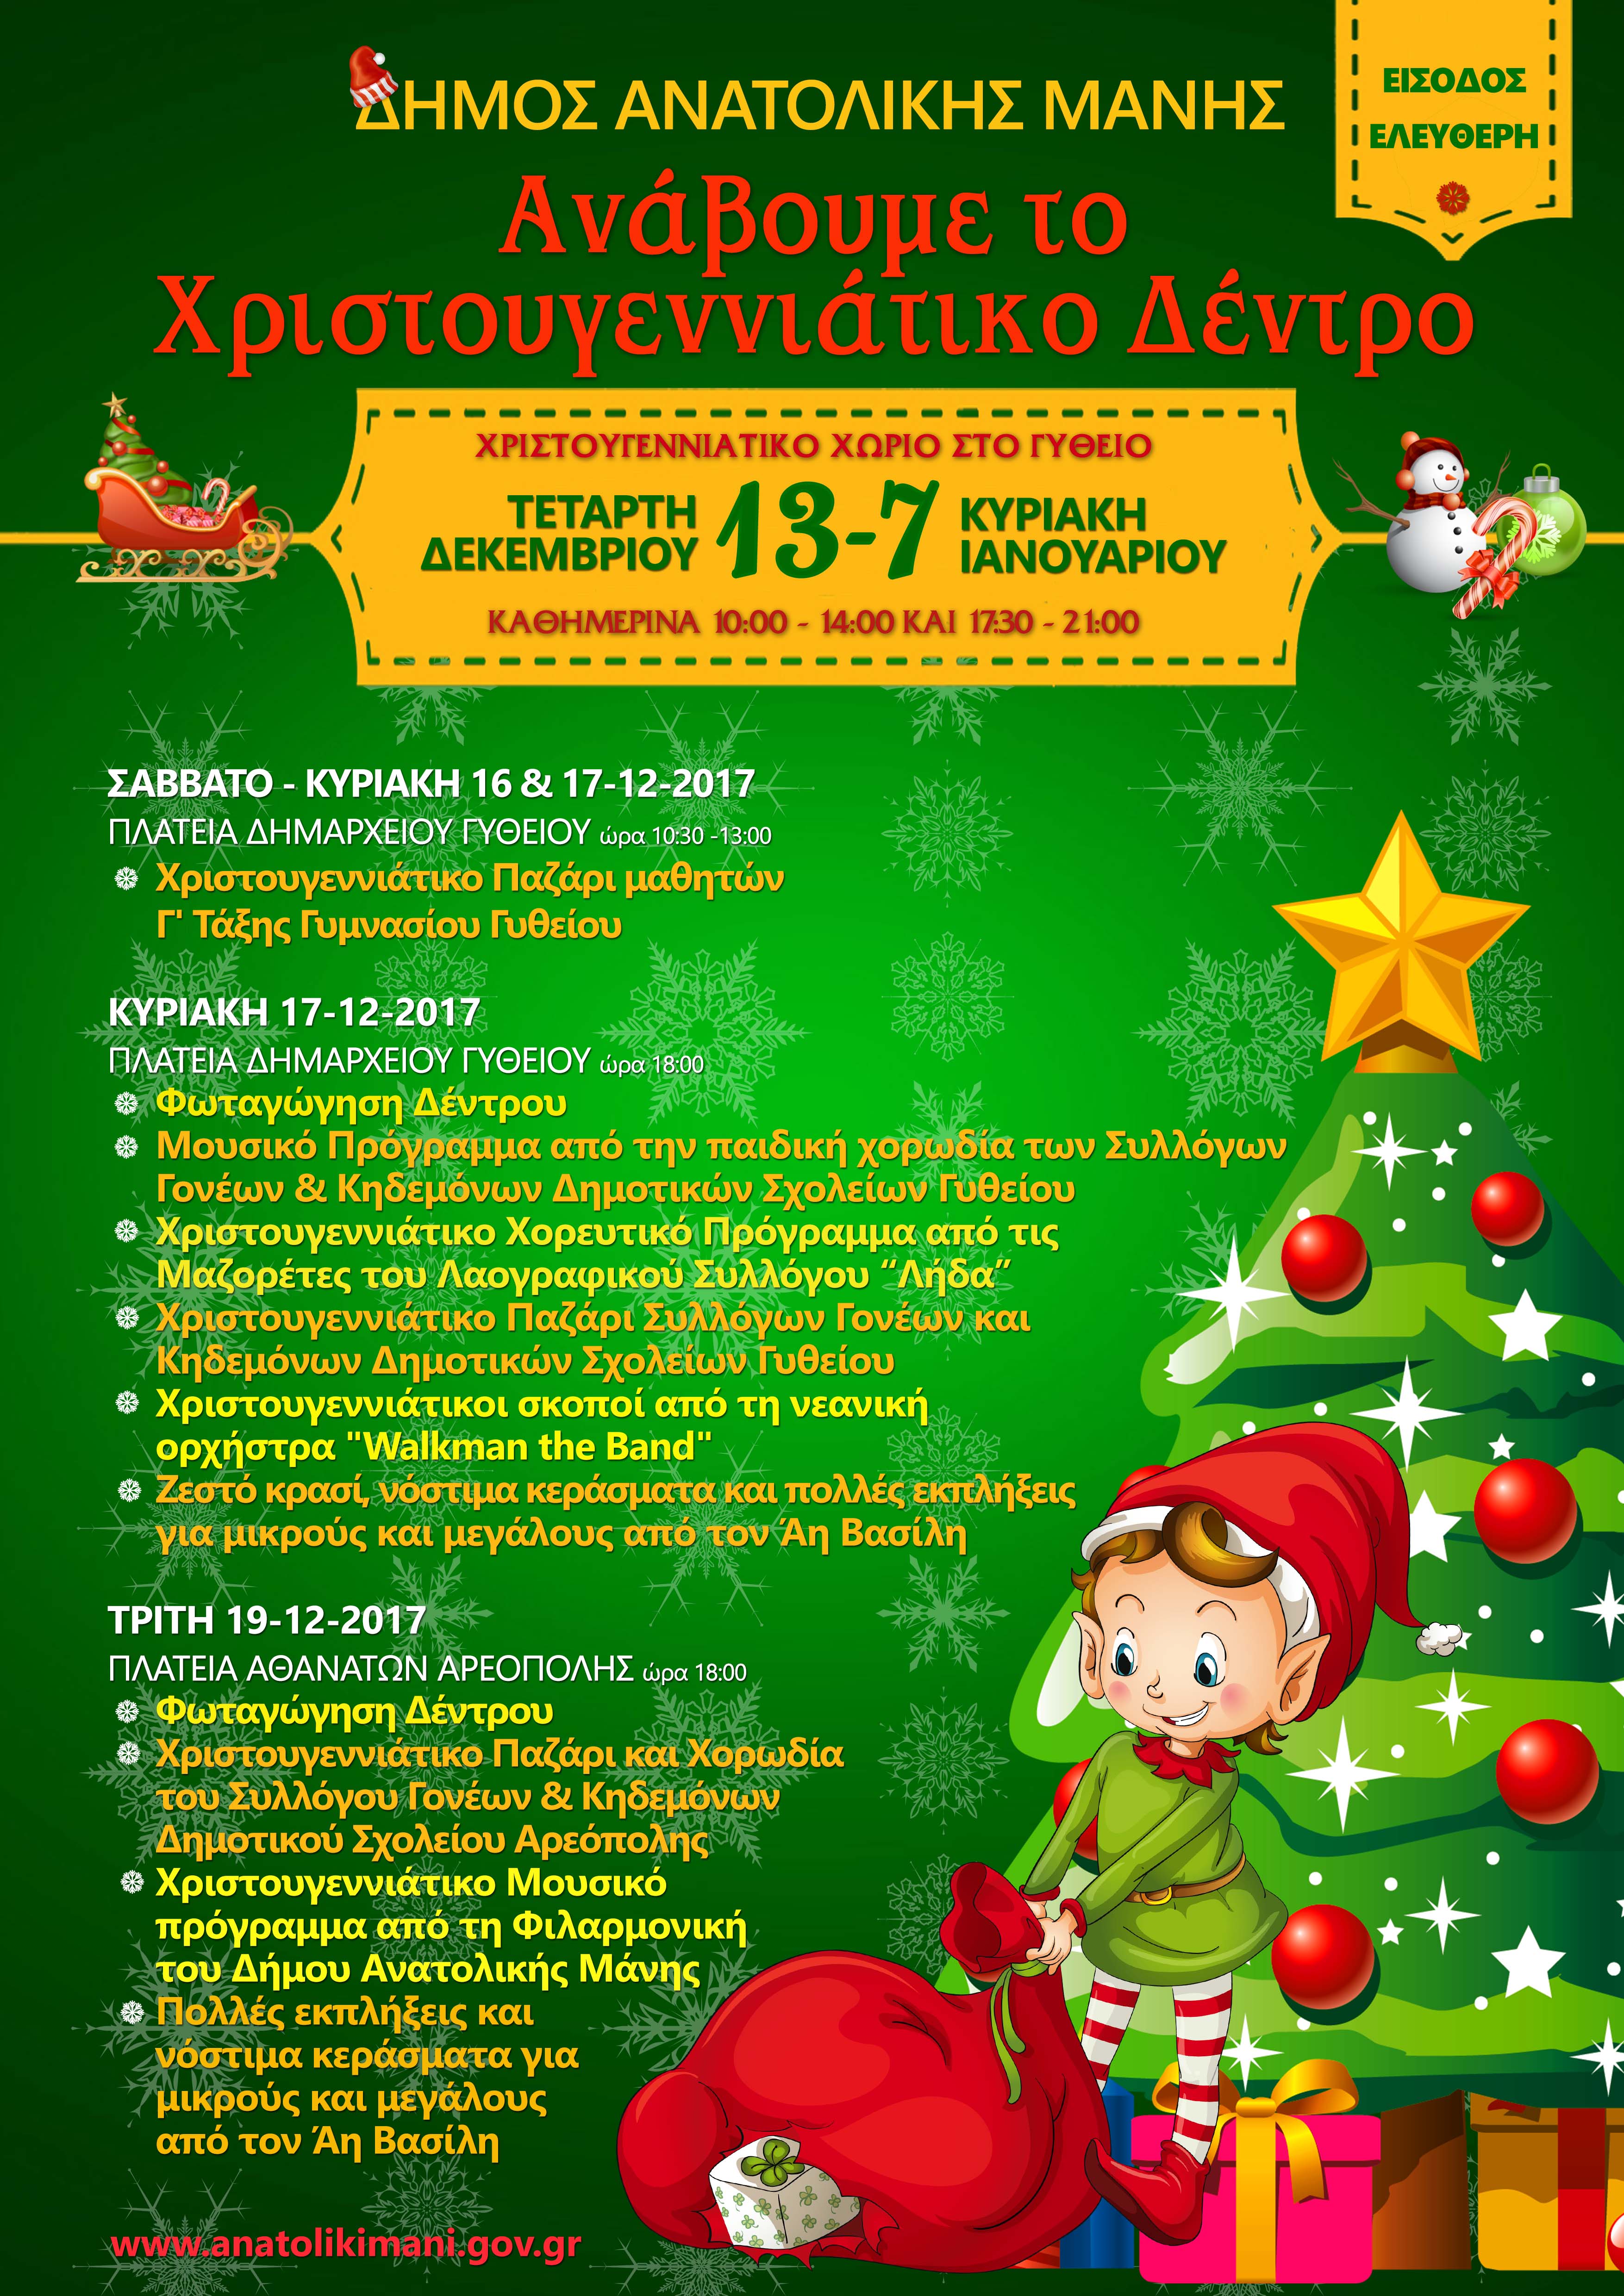 Ελάτε να ανάψουμε μαζί το Χριστουγεννιάτικο Δέντρο στο Γύθειο και την Αρεόπολη!!!